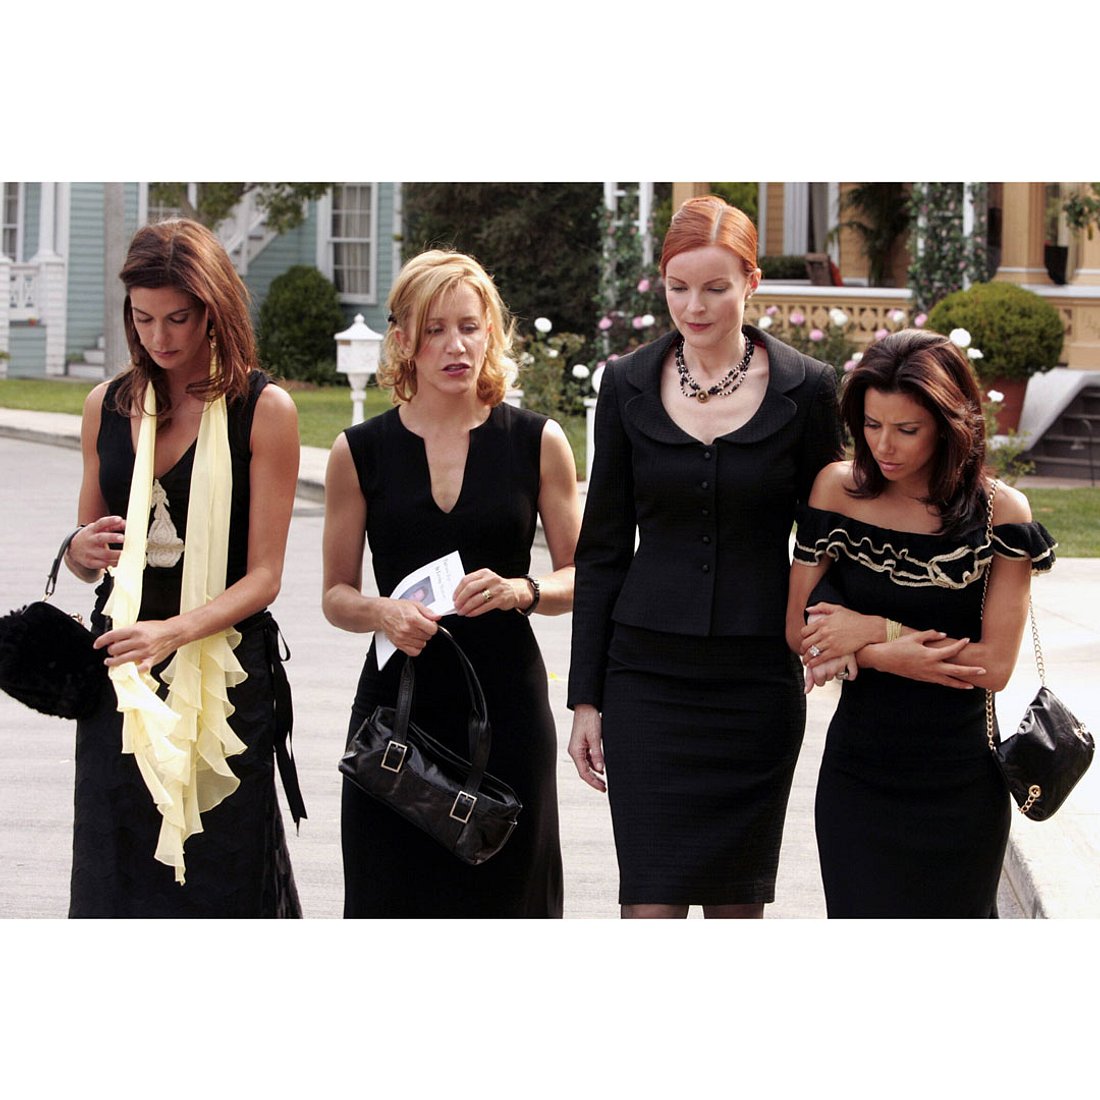 Serien-Freunde, die sich hassen: Terri Hatcher und alle „Desperate Housewives“